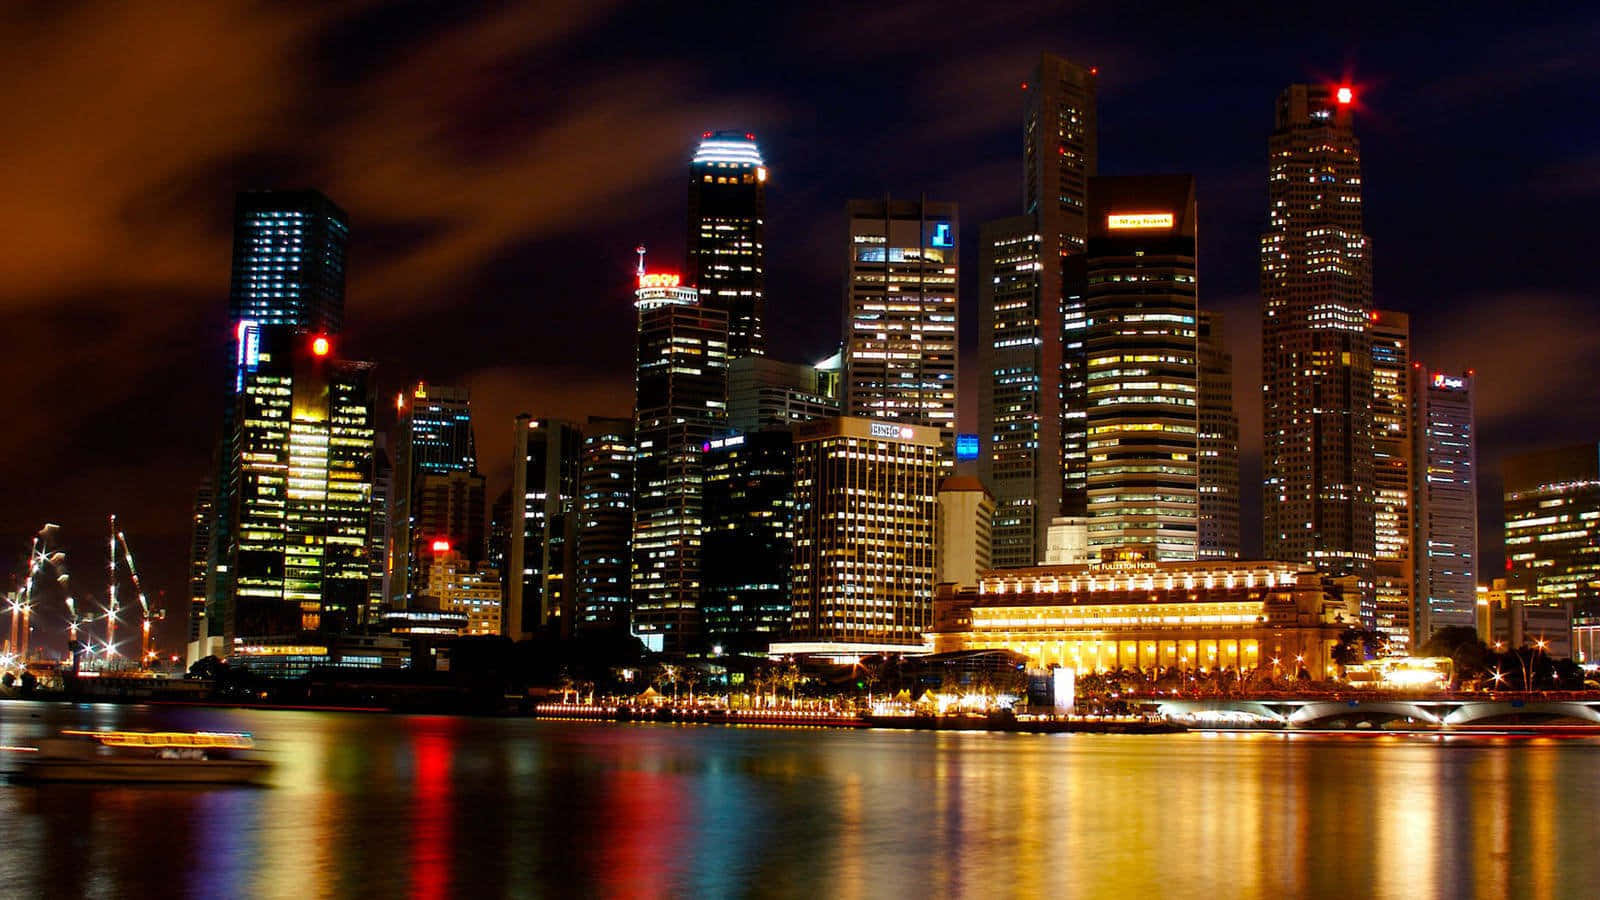 Singapurstadtnachtaufnahmen